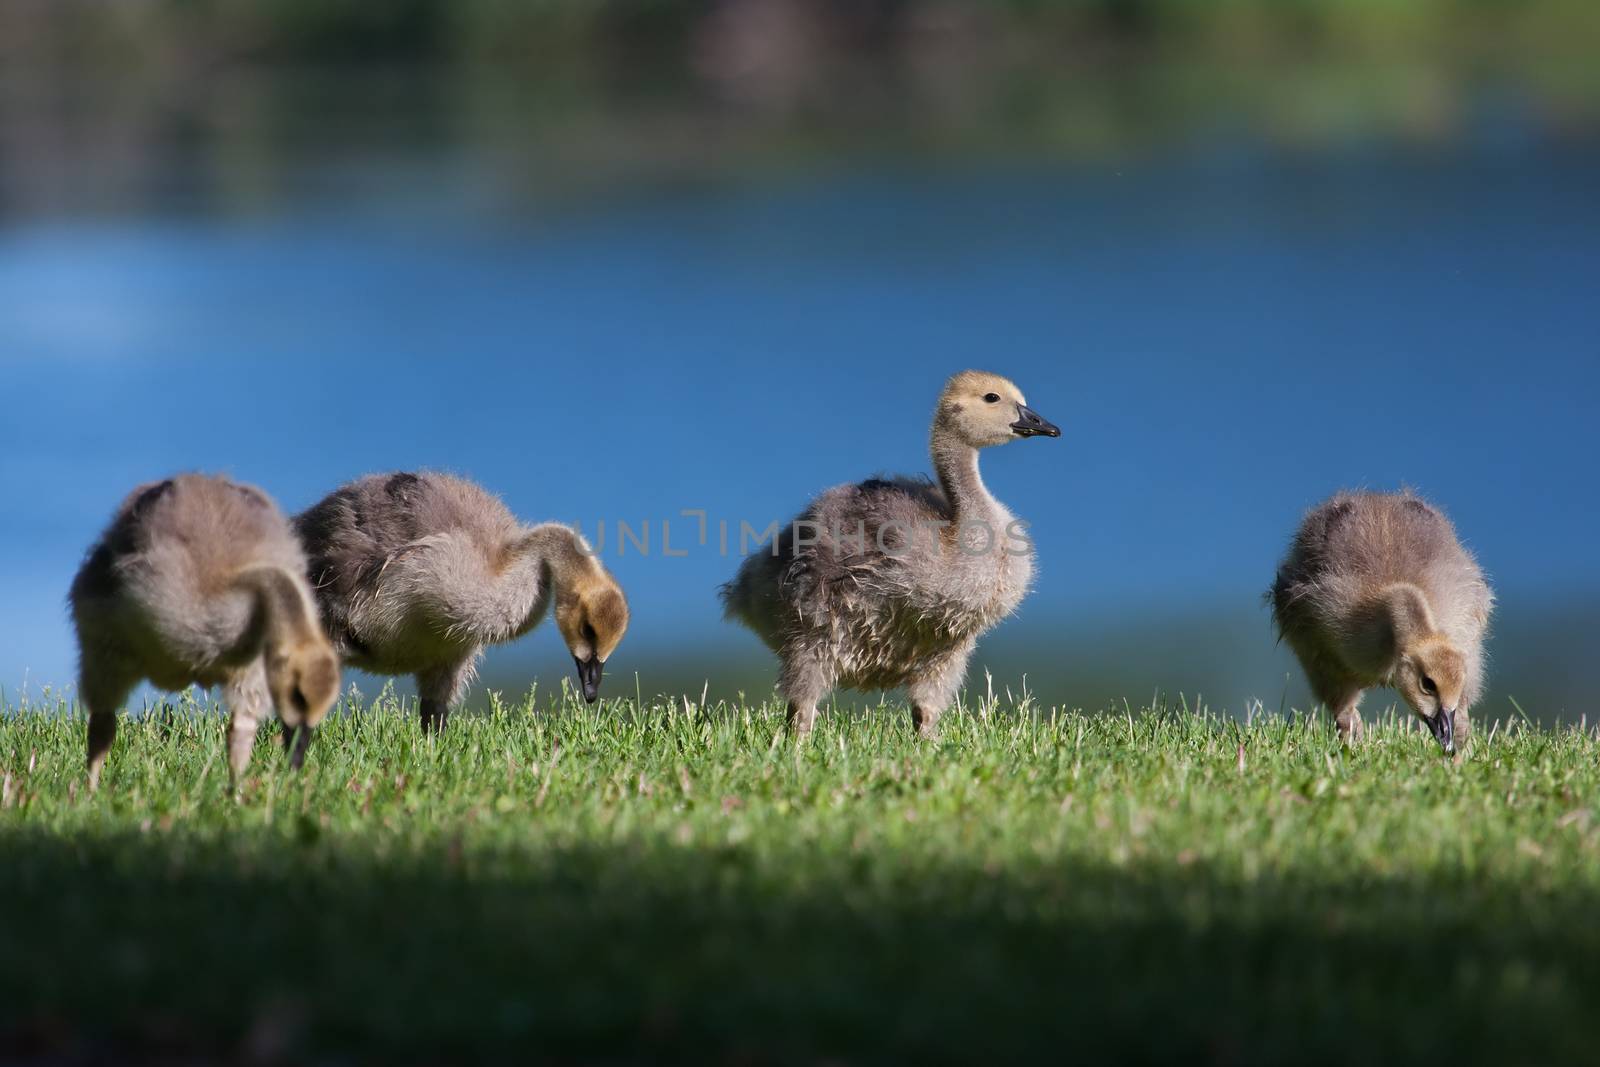 Goslings eating grass near the lake shore